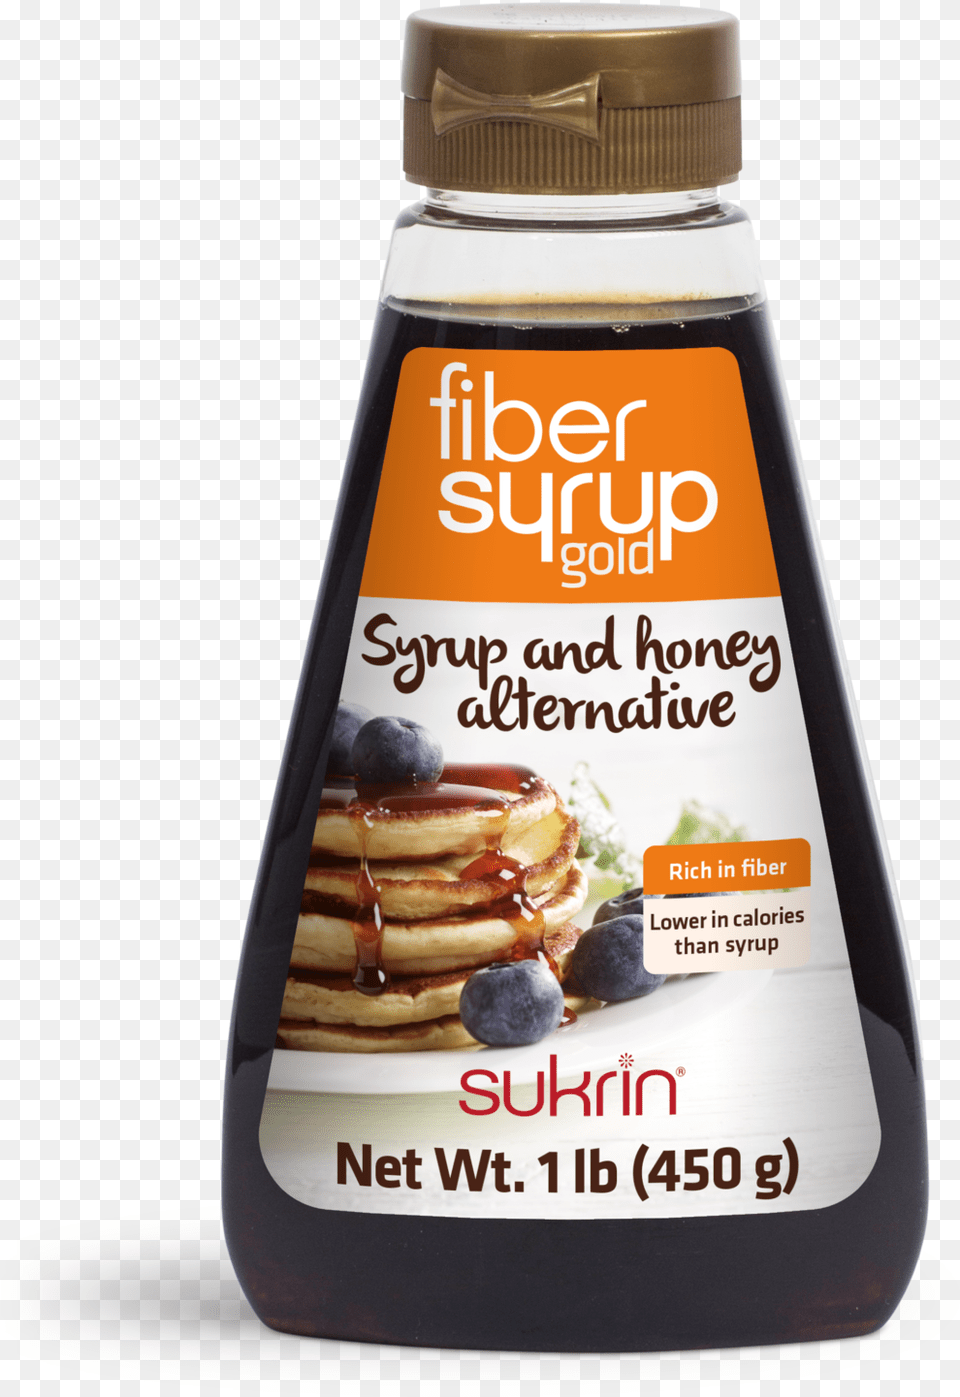 Sukrin Fiber Syrup, Food, Seasoning, Ketchup Png Image